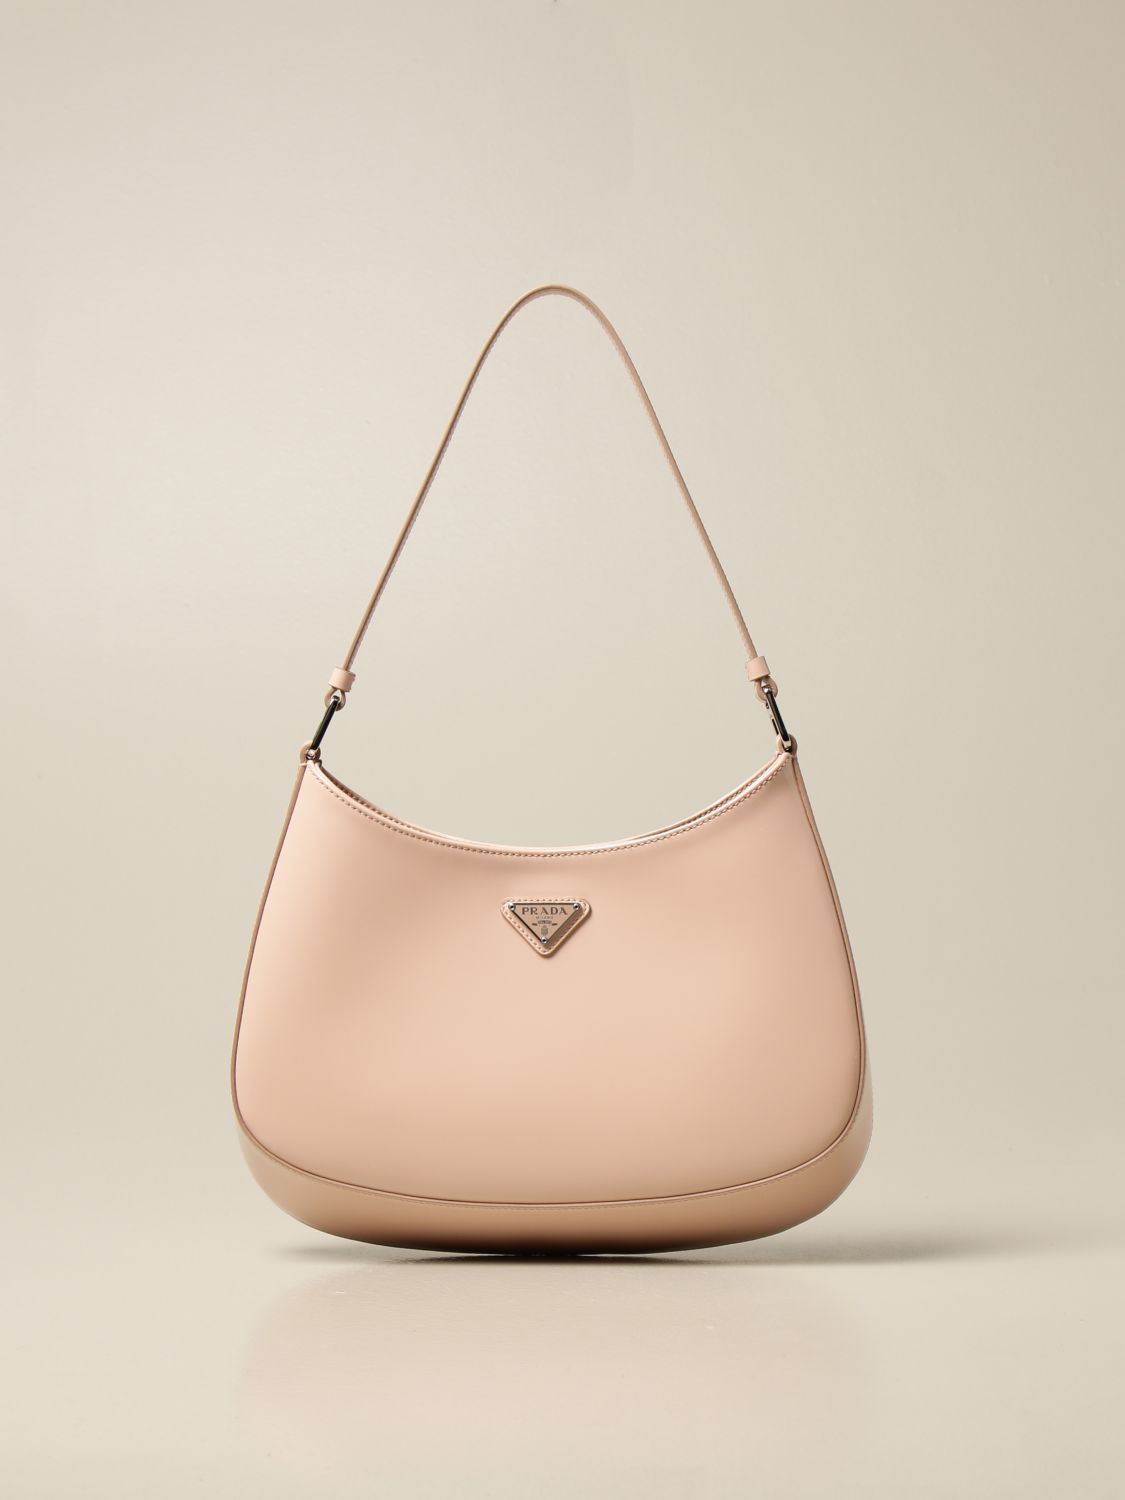 PRADA: shoulder bag in brushed leather - Orchid | Prada handbag 1BC499 ZO6  online on 